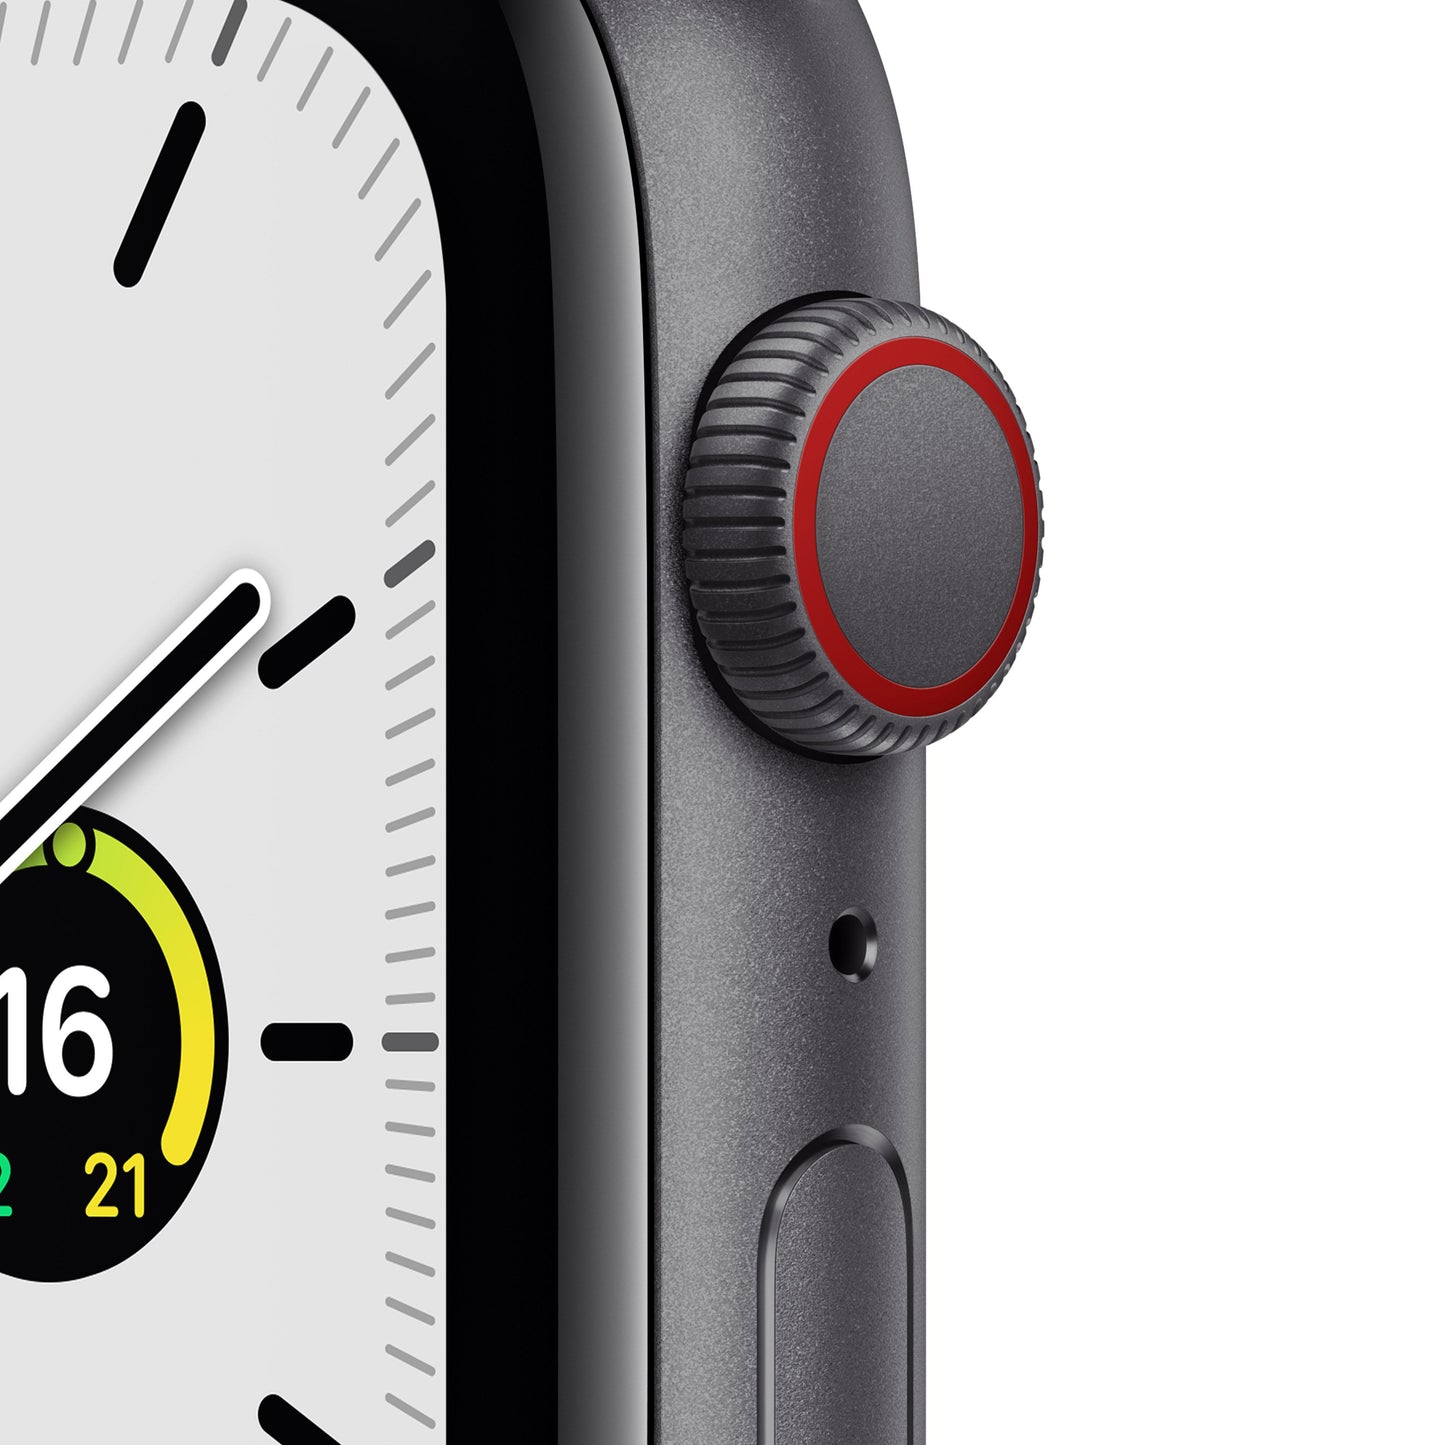 Apple Watch SE (GPS + Cellular) - Caja de aluminio en gris espacial de 44 mm - Correa deportiva en color medianoche - Talla única